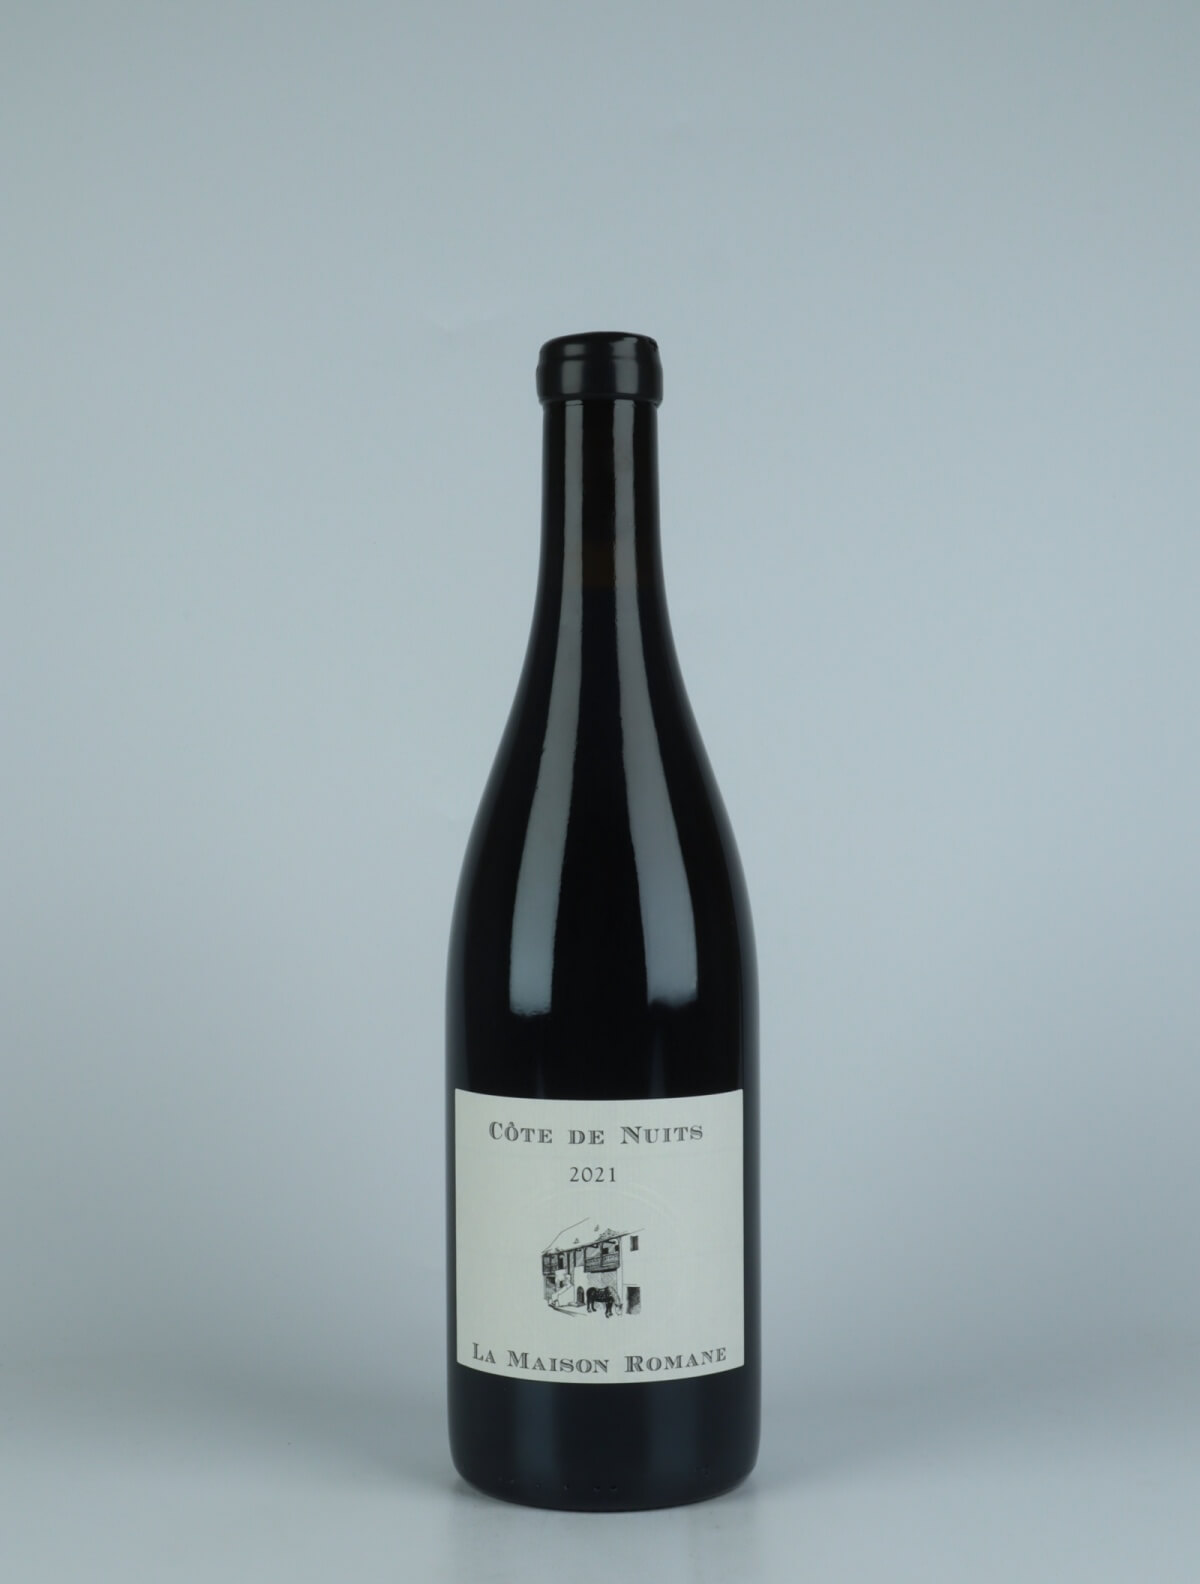 A bottle 2021 Côtes de Nuits Villages Red wine from La Maison Romane, Burgundy in France